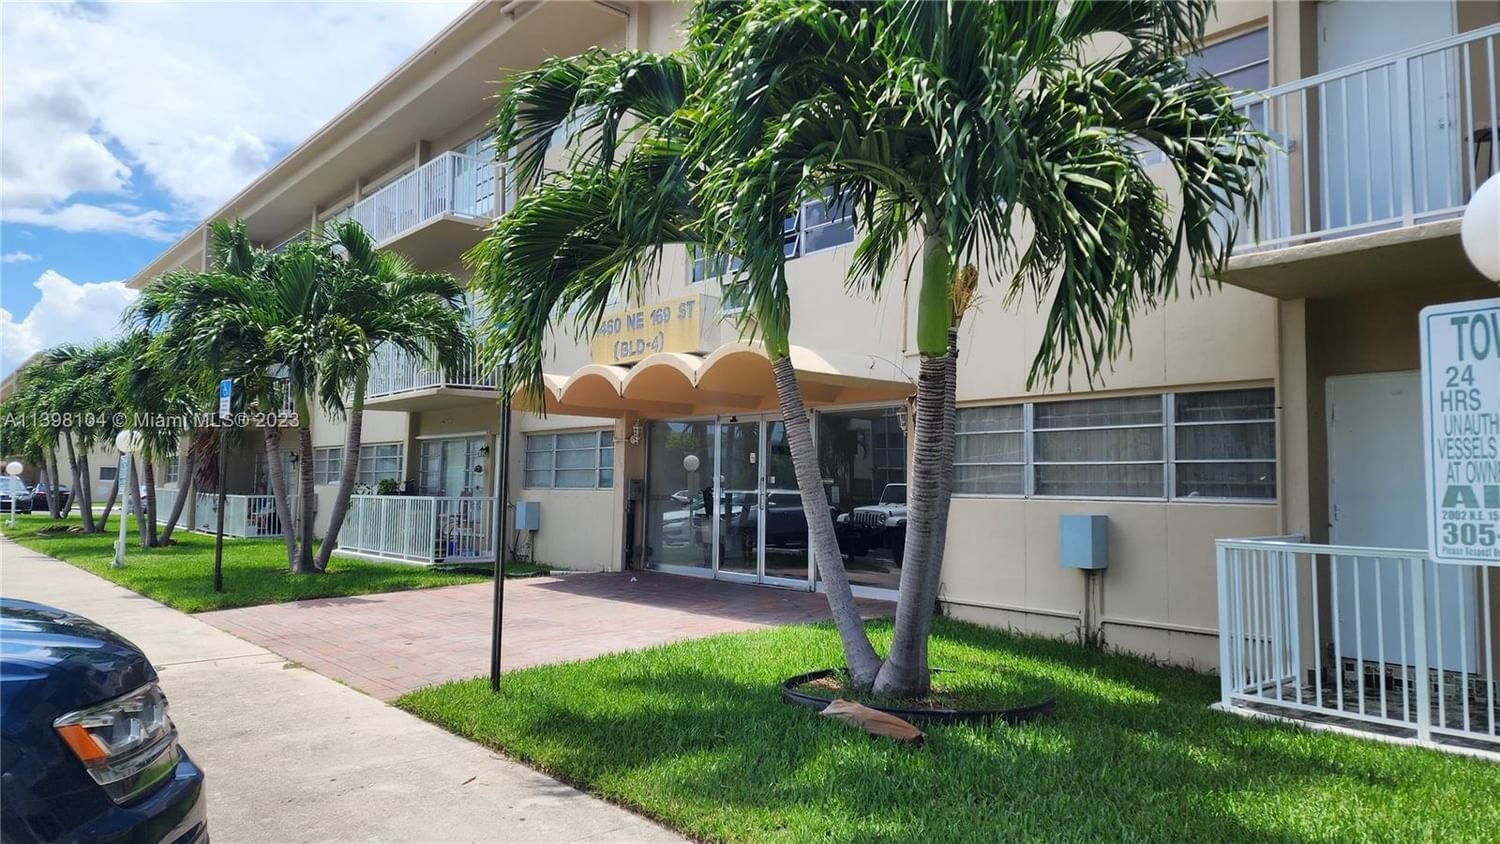 Real estate property located at 1460 169th St #107, Miami-Dade County, FOUNTAINVIEW CONDO NO 4, Miami, FL